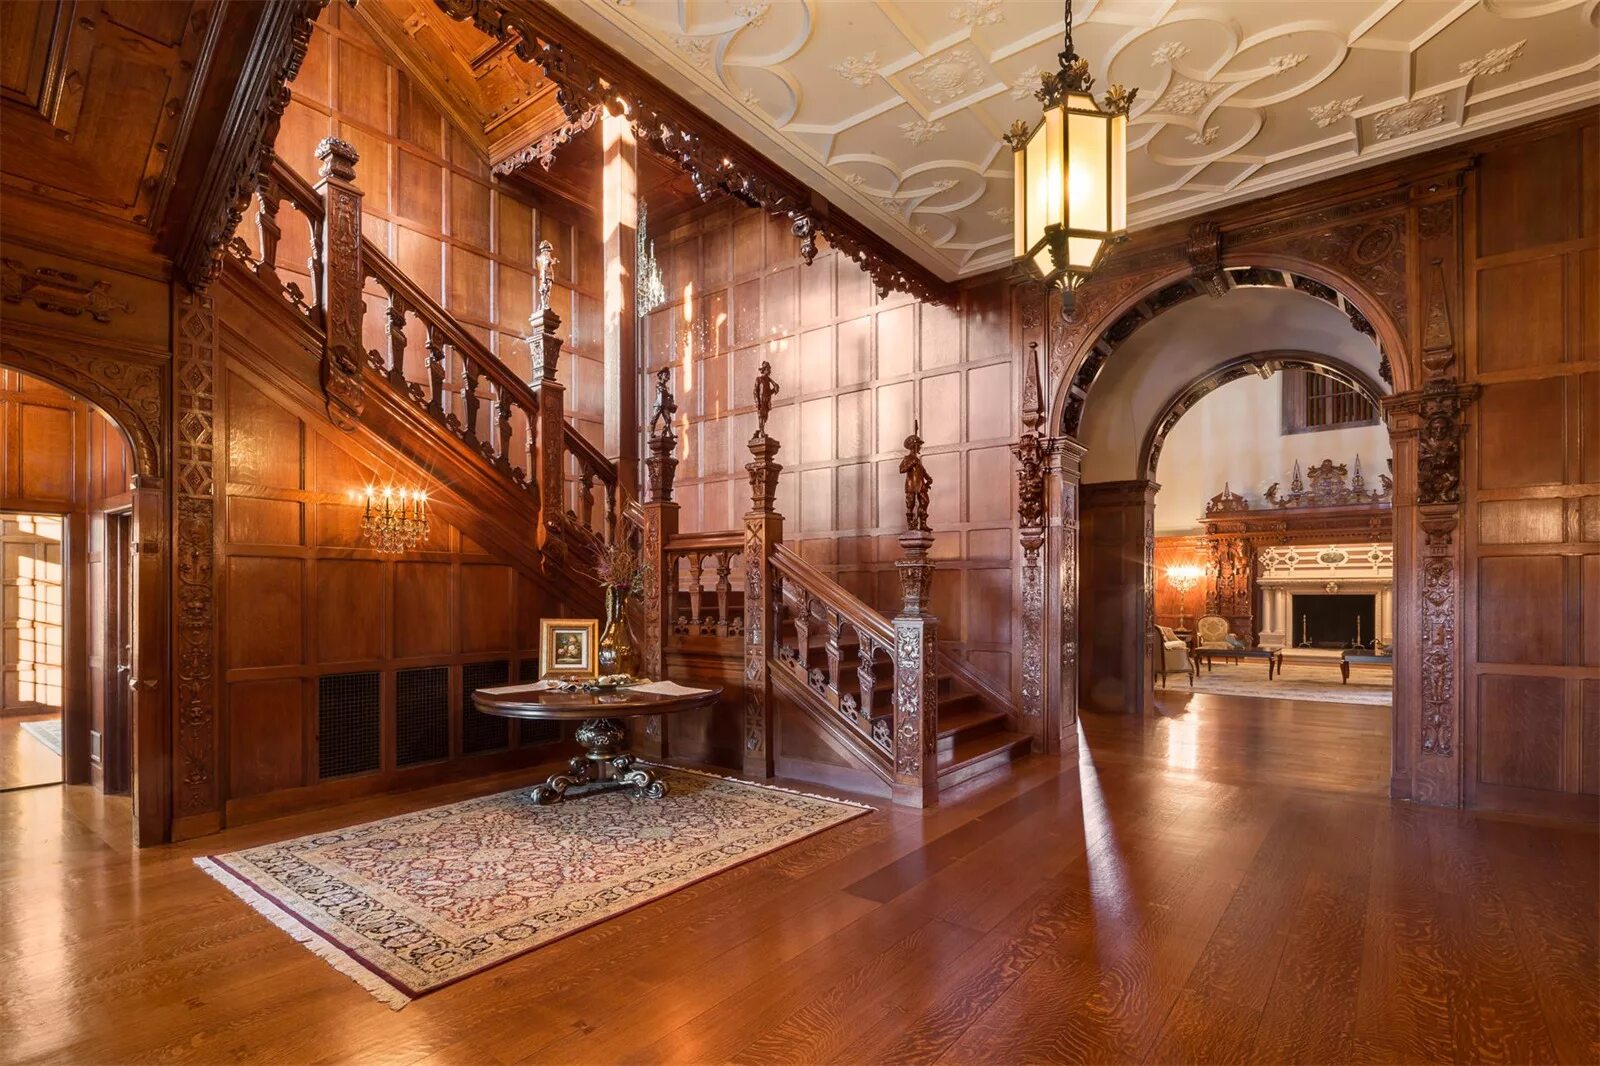 Грейнджер Холл особняк лестница. Особняк Greystone Mansion коридоры. Особняк в Англии в викторианском стиле внутри. Английский особняк Викторианский стиль интерьер. Hall на английском